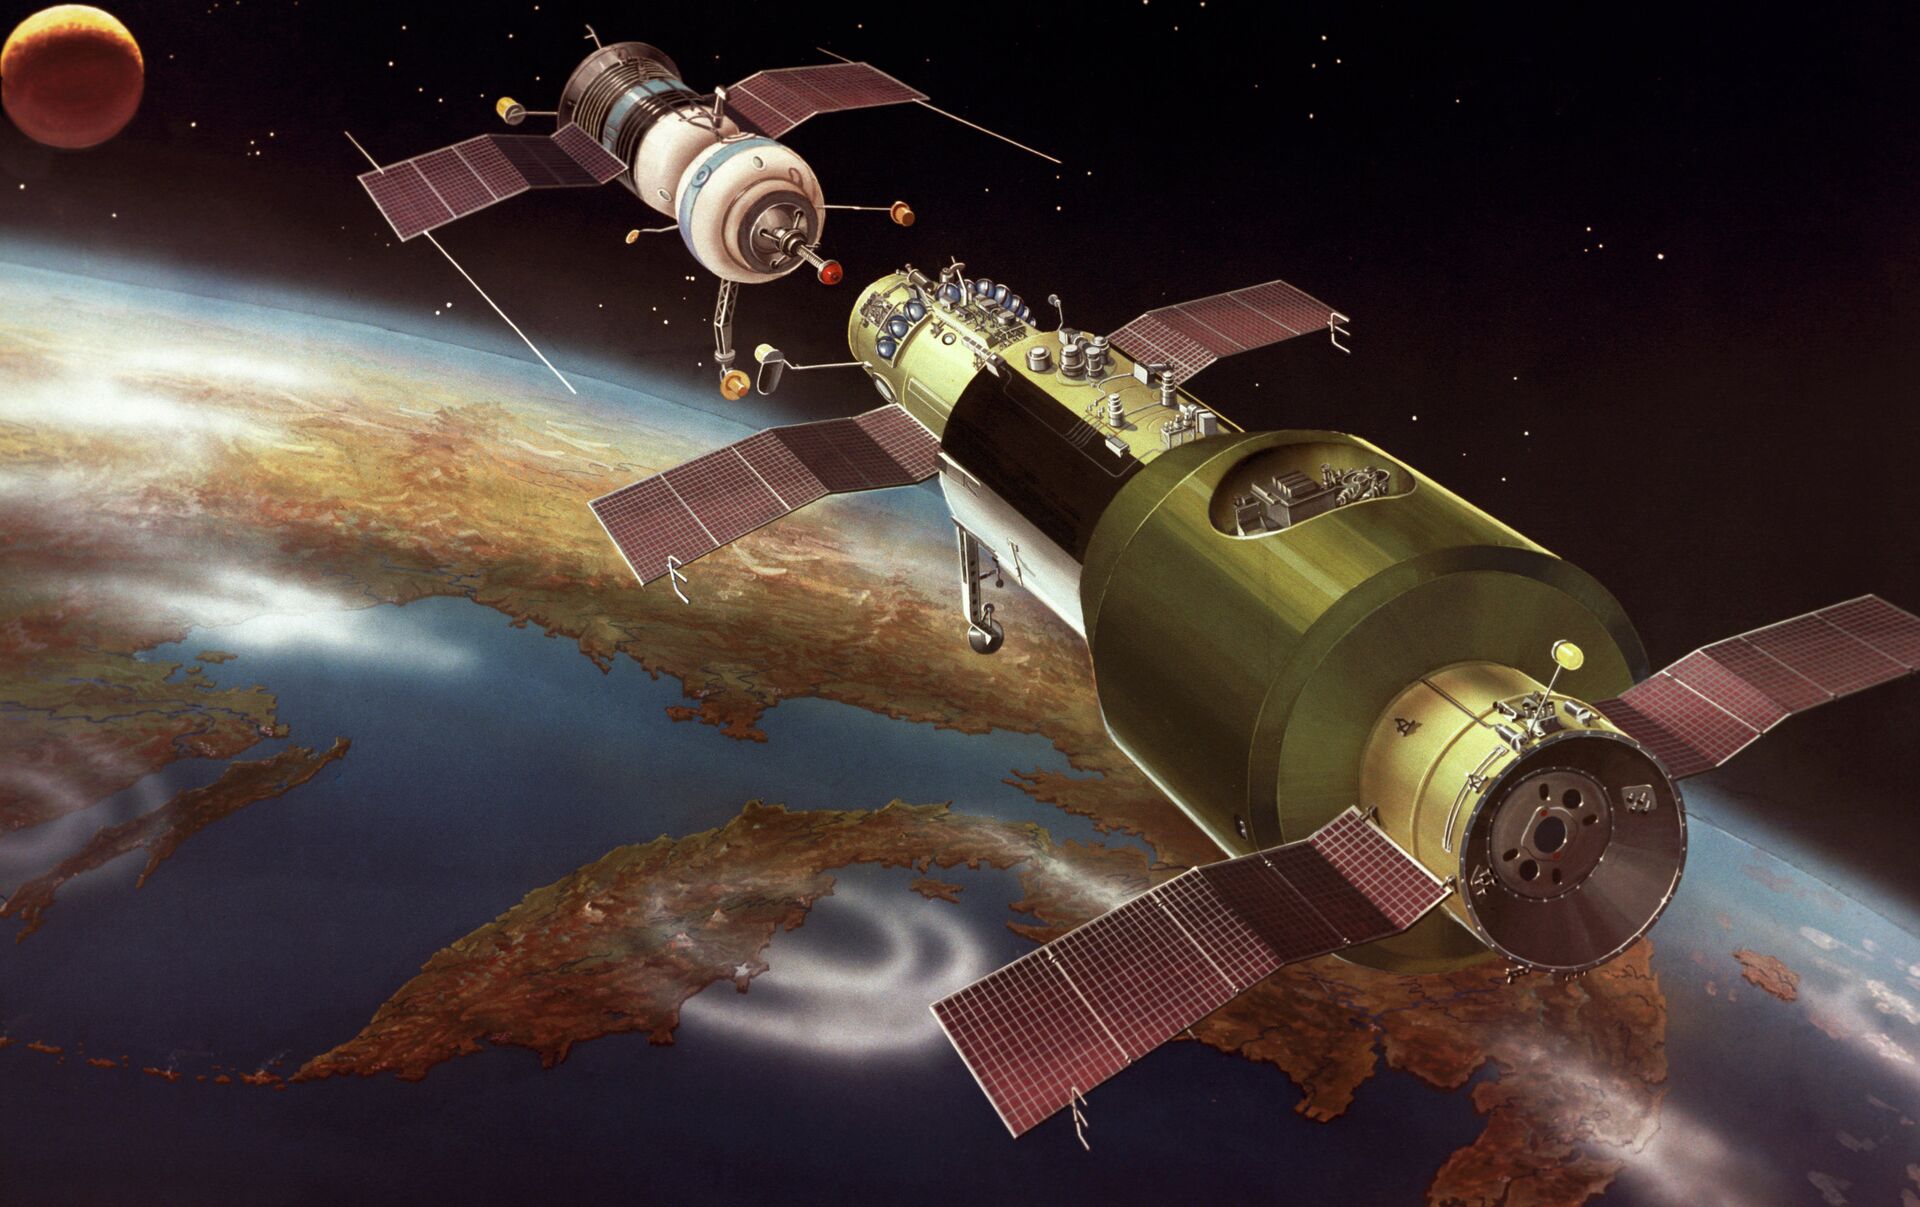 Mir 11. Салют-1 орбитальная станция. Орбитальный комплекс салют - Союз. Салют-2 орбитальная станция. Пилотируемая орбитальная станция «салют-1».